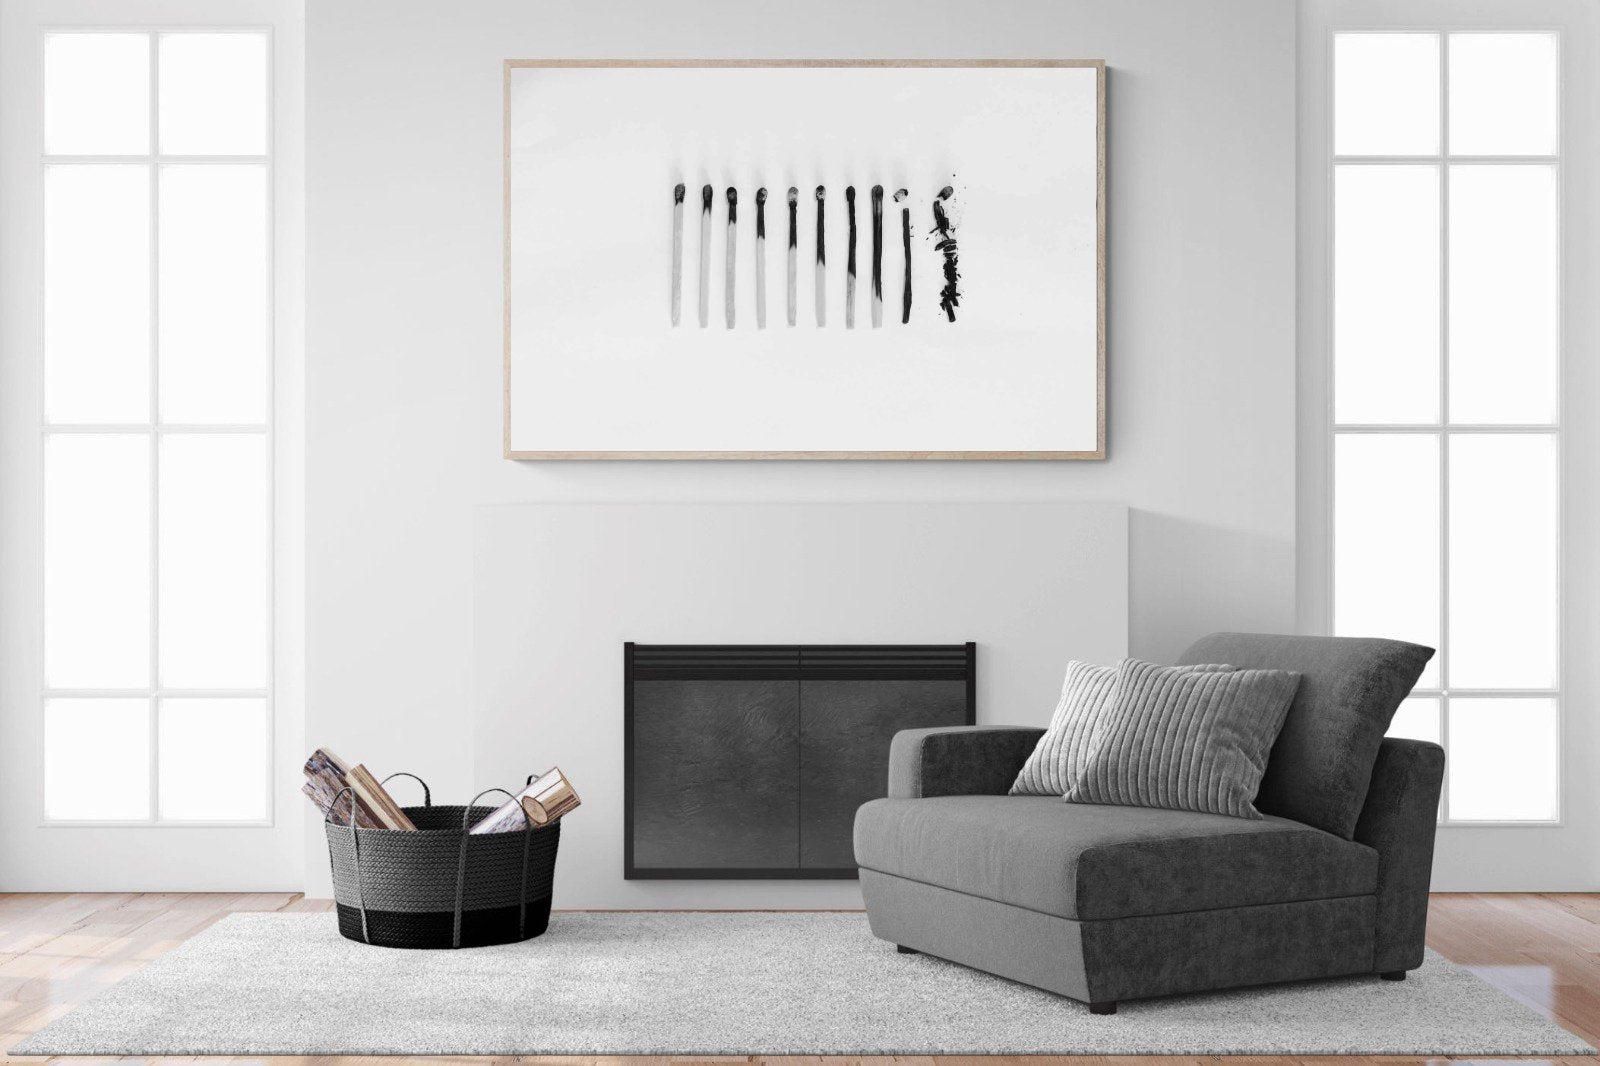 Matchsticks-Wall_Art-150 x 100cm-Mounted Canvas-Wood-Pixalot